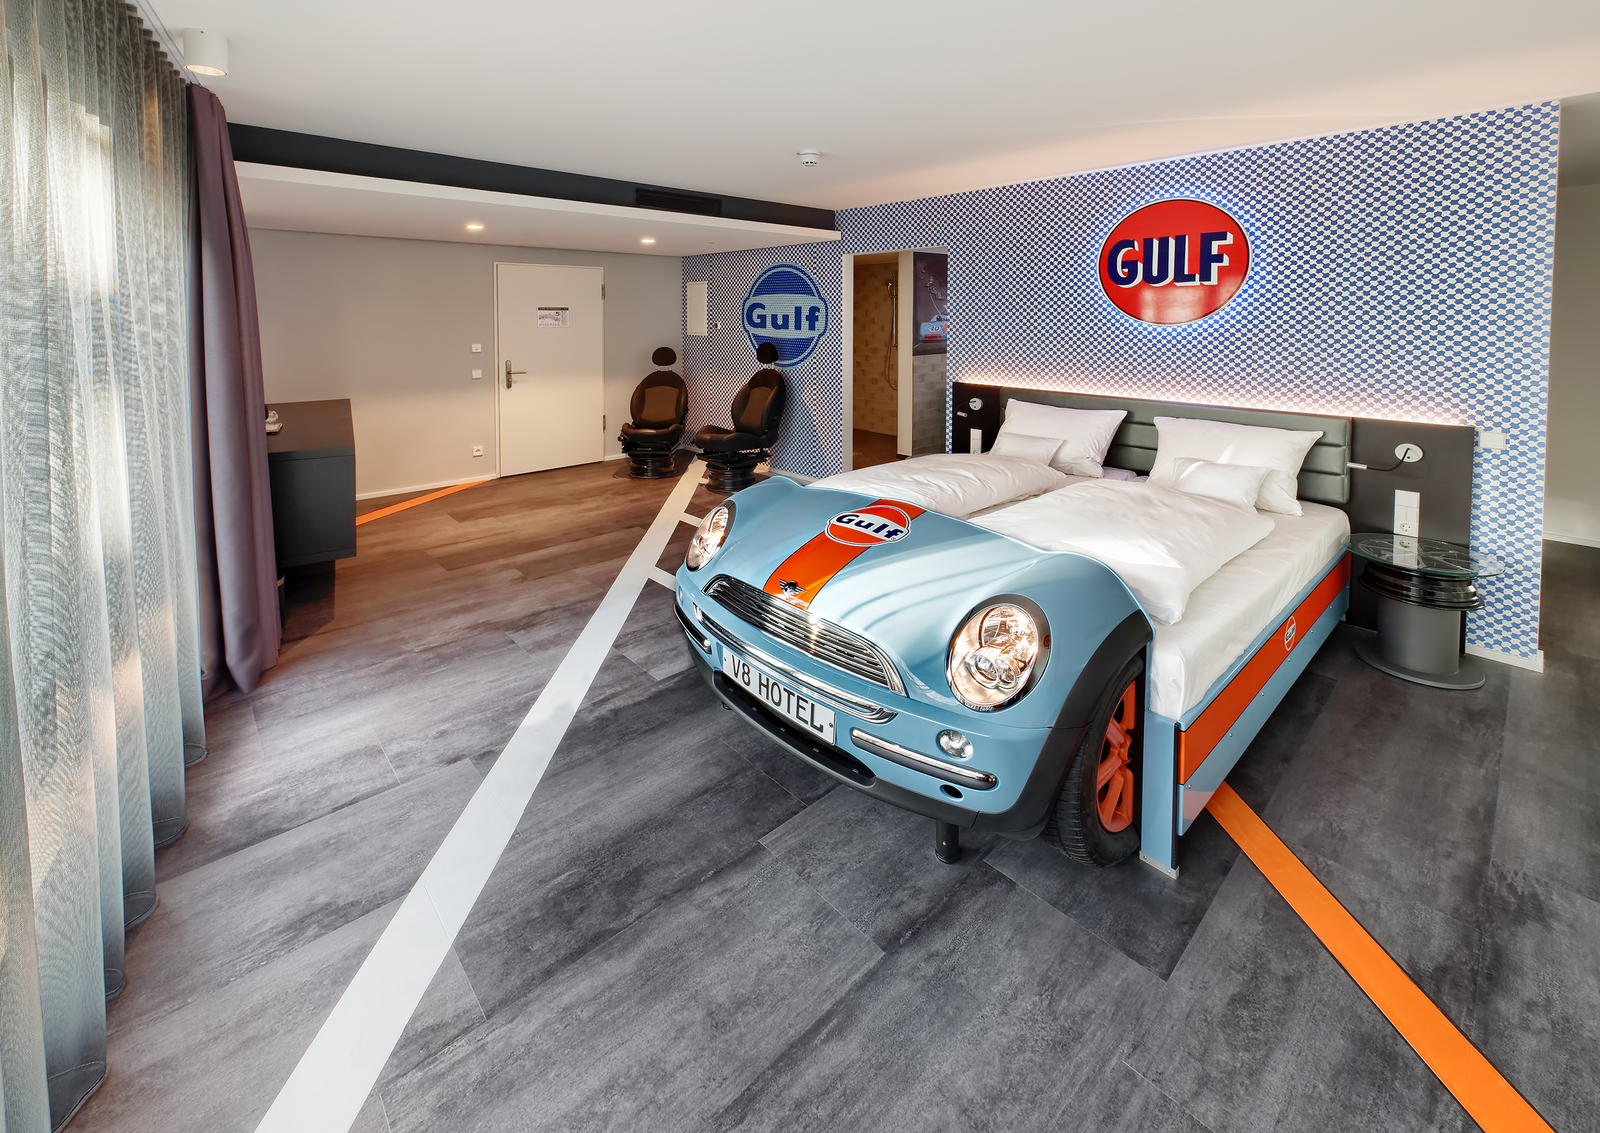 Gulf-Themenzimmer im V8 Hotel mit einem hellblauen Autobett an einer karierten Wand neben zwei Autositzsesseln